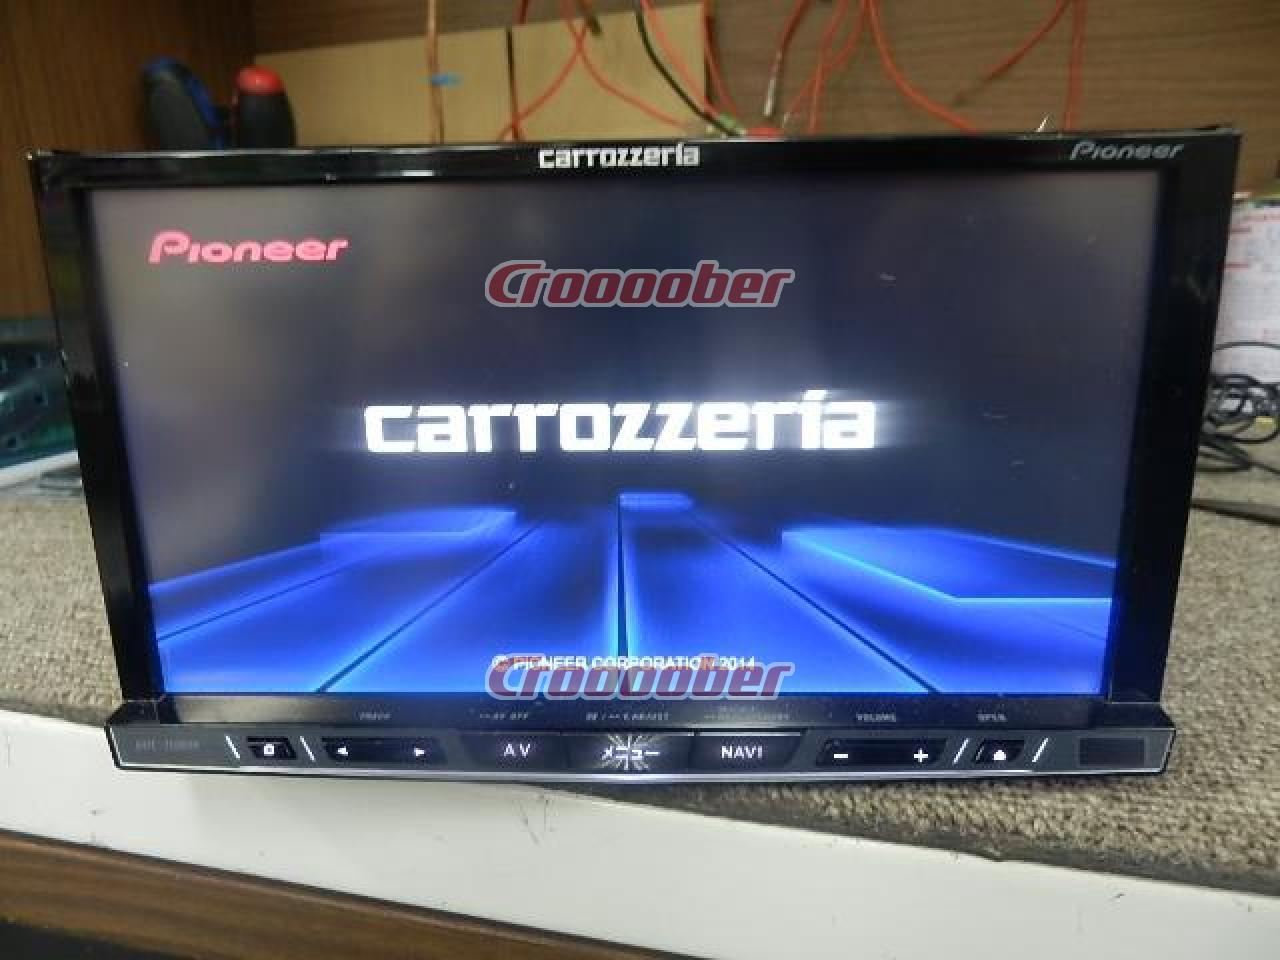 Carrozzeria AVIC-ZH0099 7 V-type Wide VGA Terrestrial Digital TV